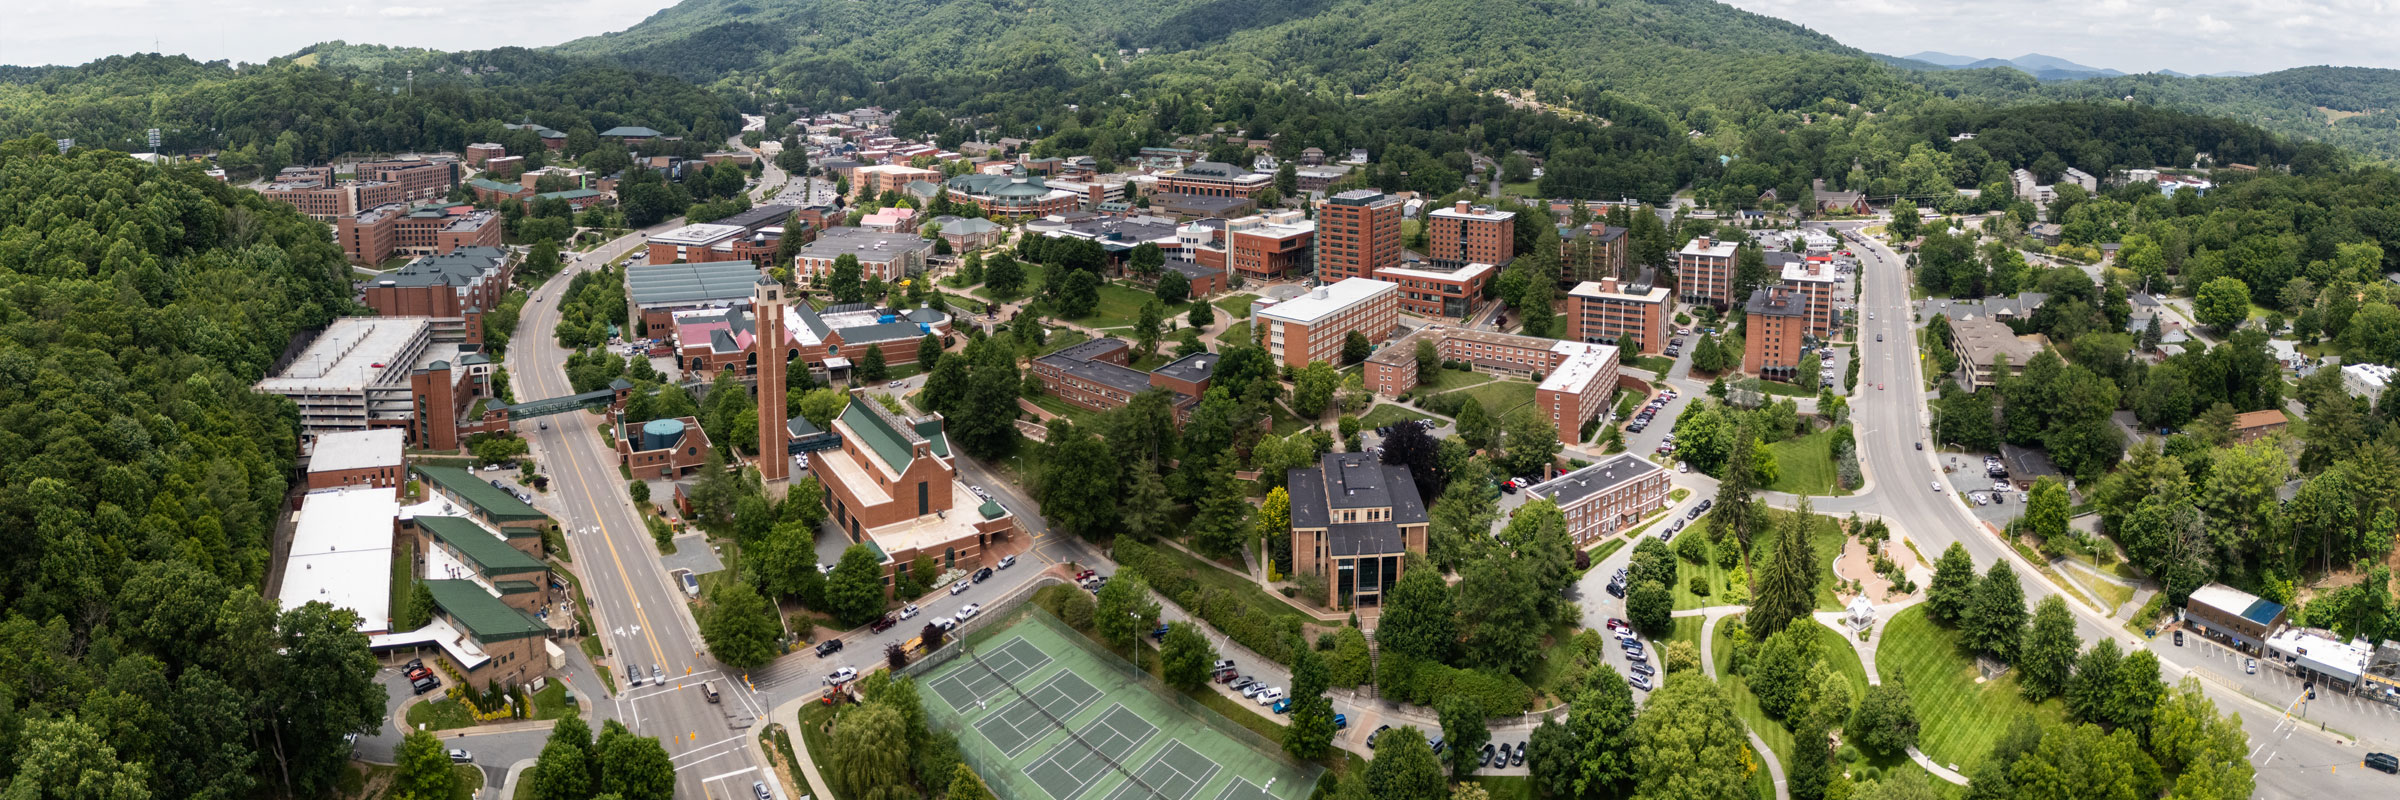 Campus Aerial View